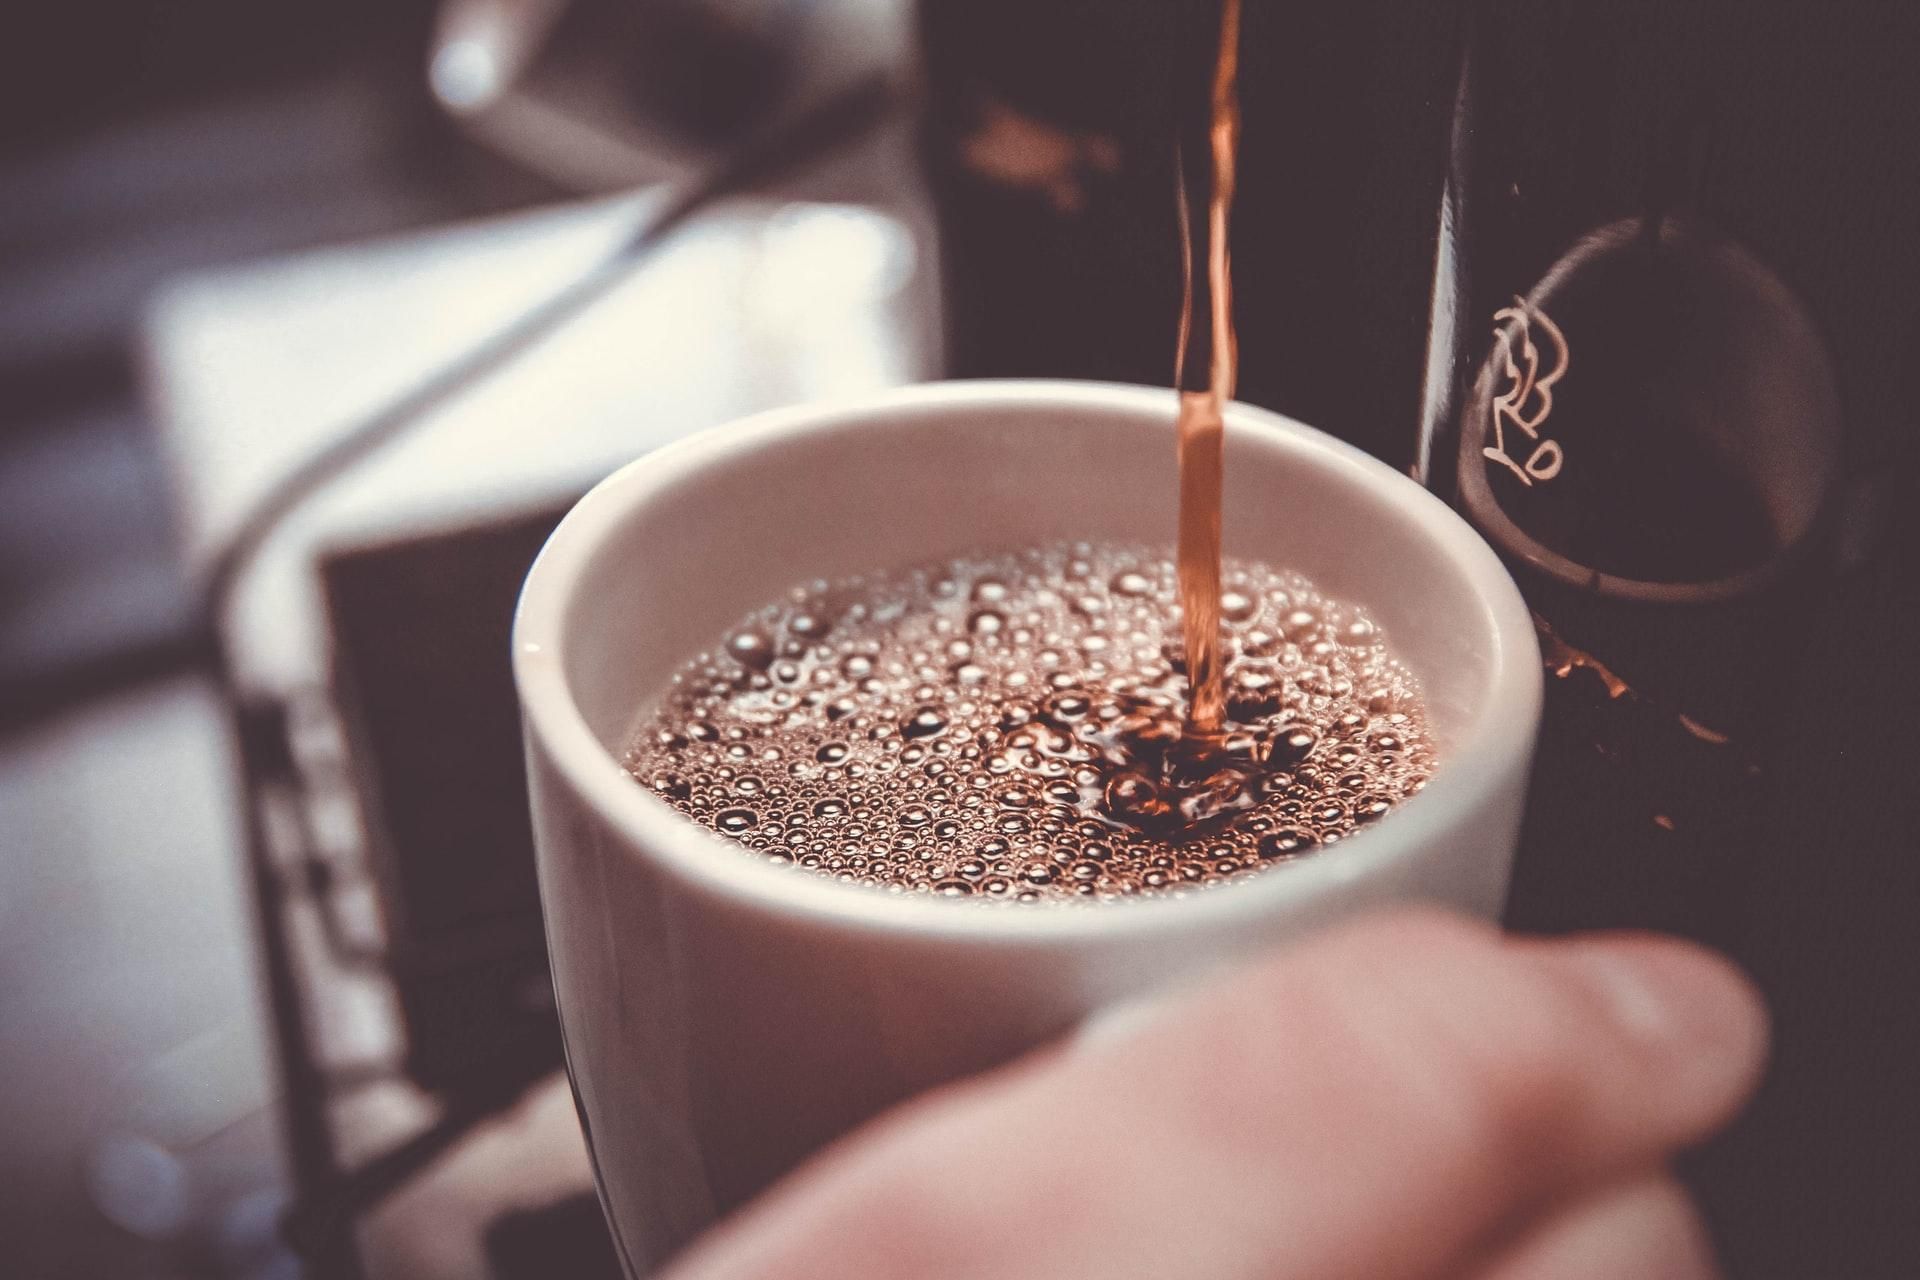 Употребление кофе на ночь не влияет на сон, но меняет структуру мозга: исследование